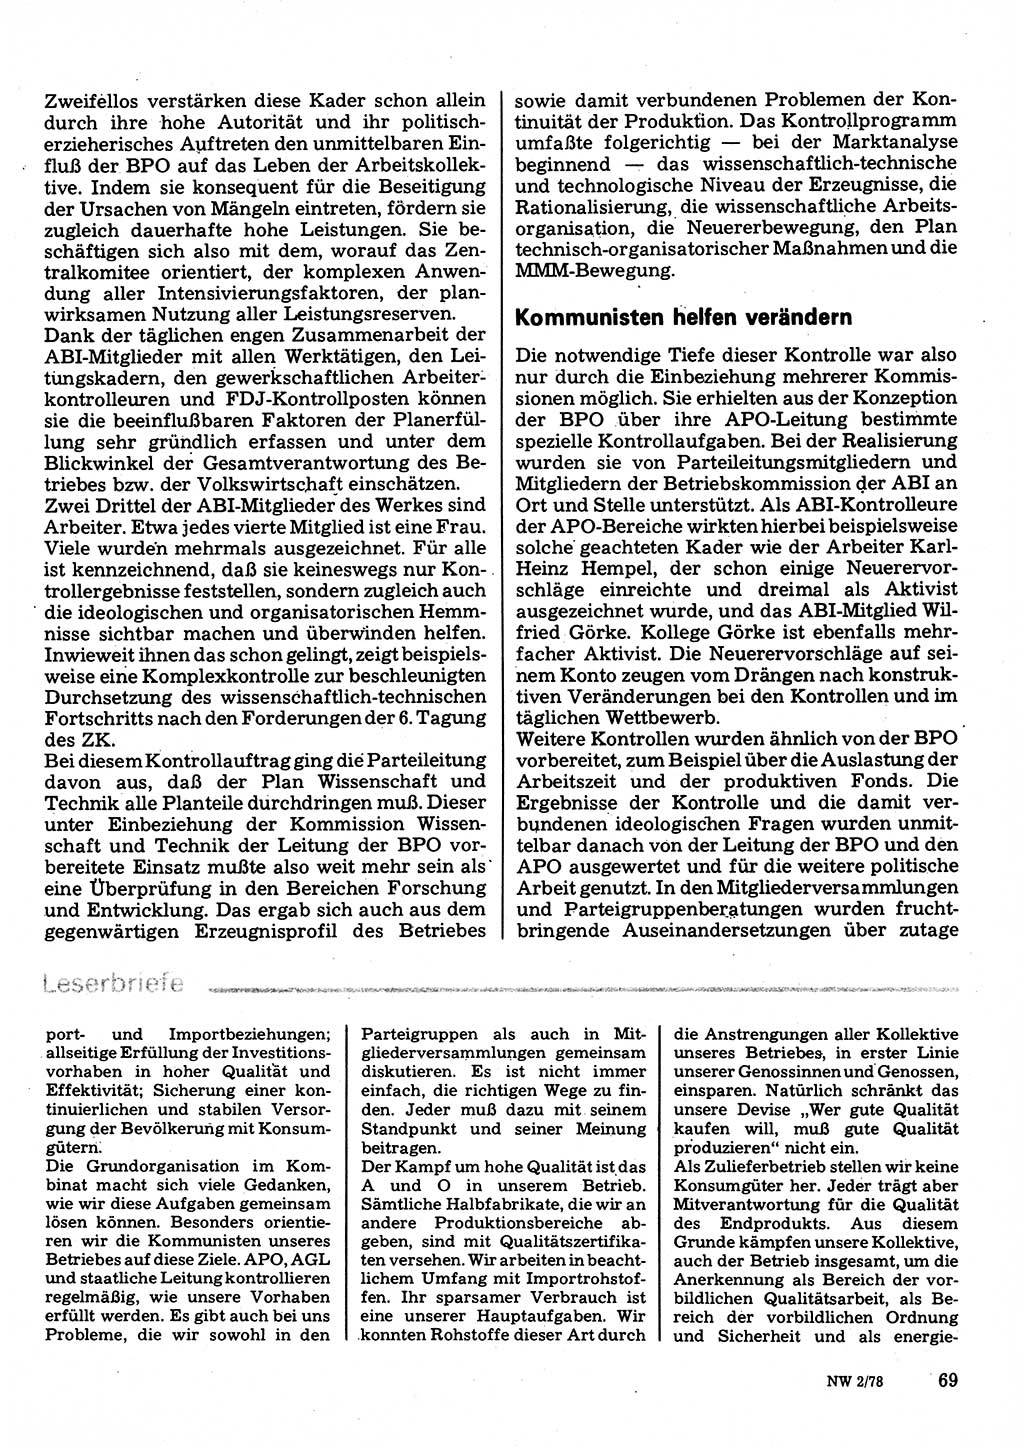 Neuer Weg (NW), Organ des Zentralkomitees (ZK) der SED (Sozialistische Einheitspartei Deutschlands) für Fragen des Parteilebens, 33. Jahrgang [Deutsche Demokratische Republik (DDR)] 1978, Seite 69 (NW ZK SED DDR 1978, S. 69)